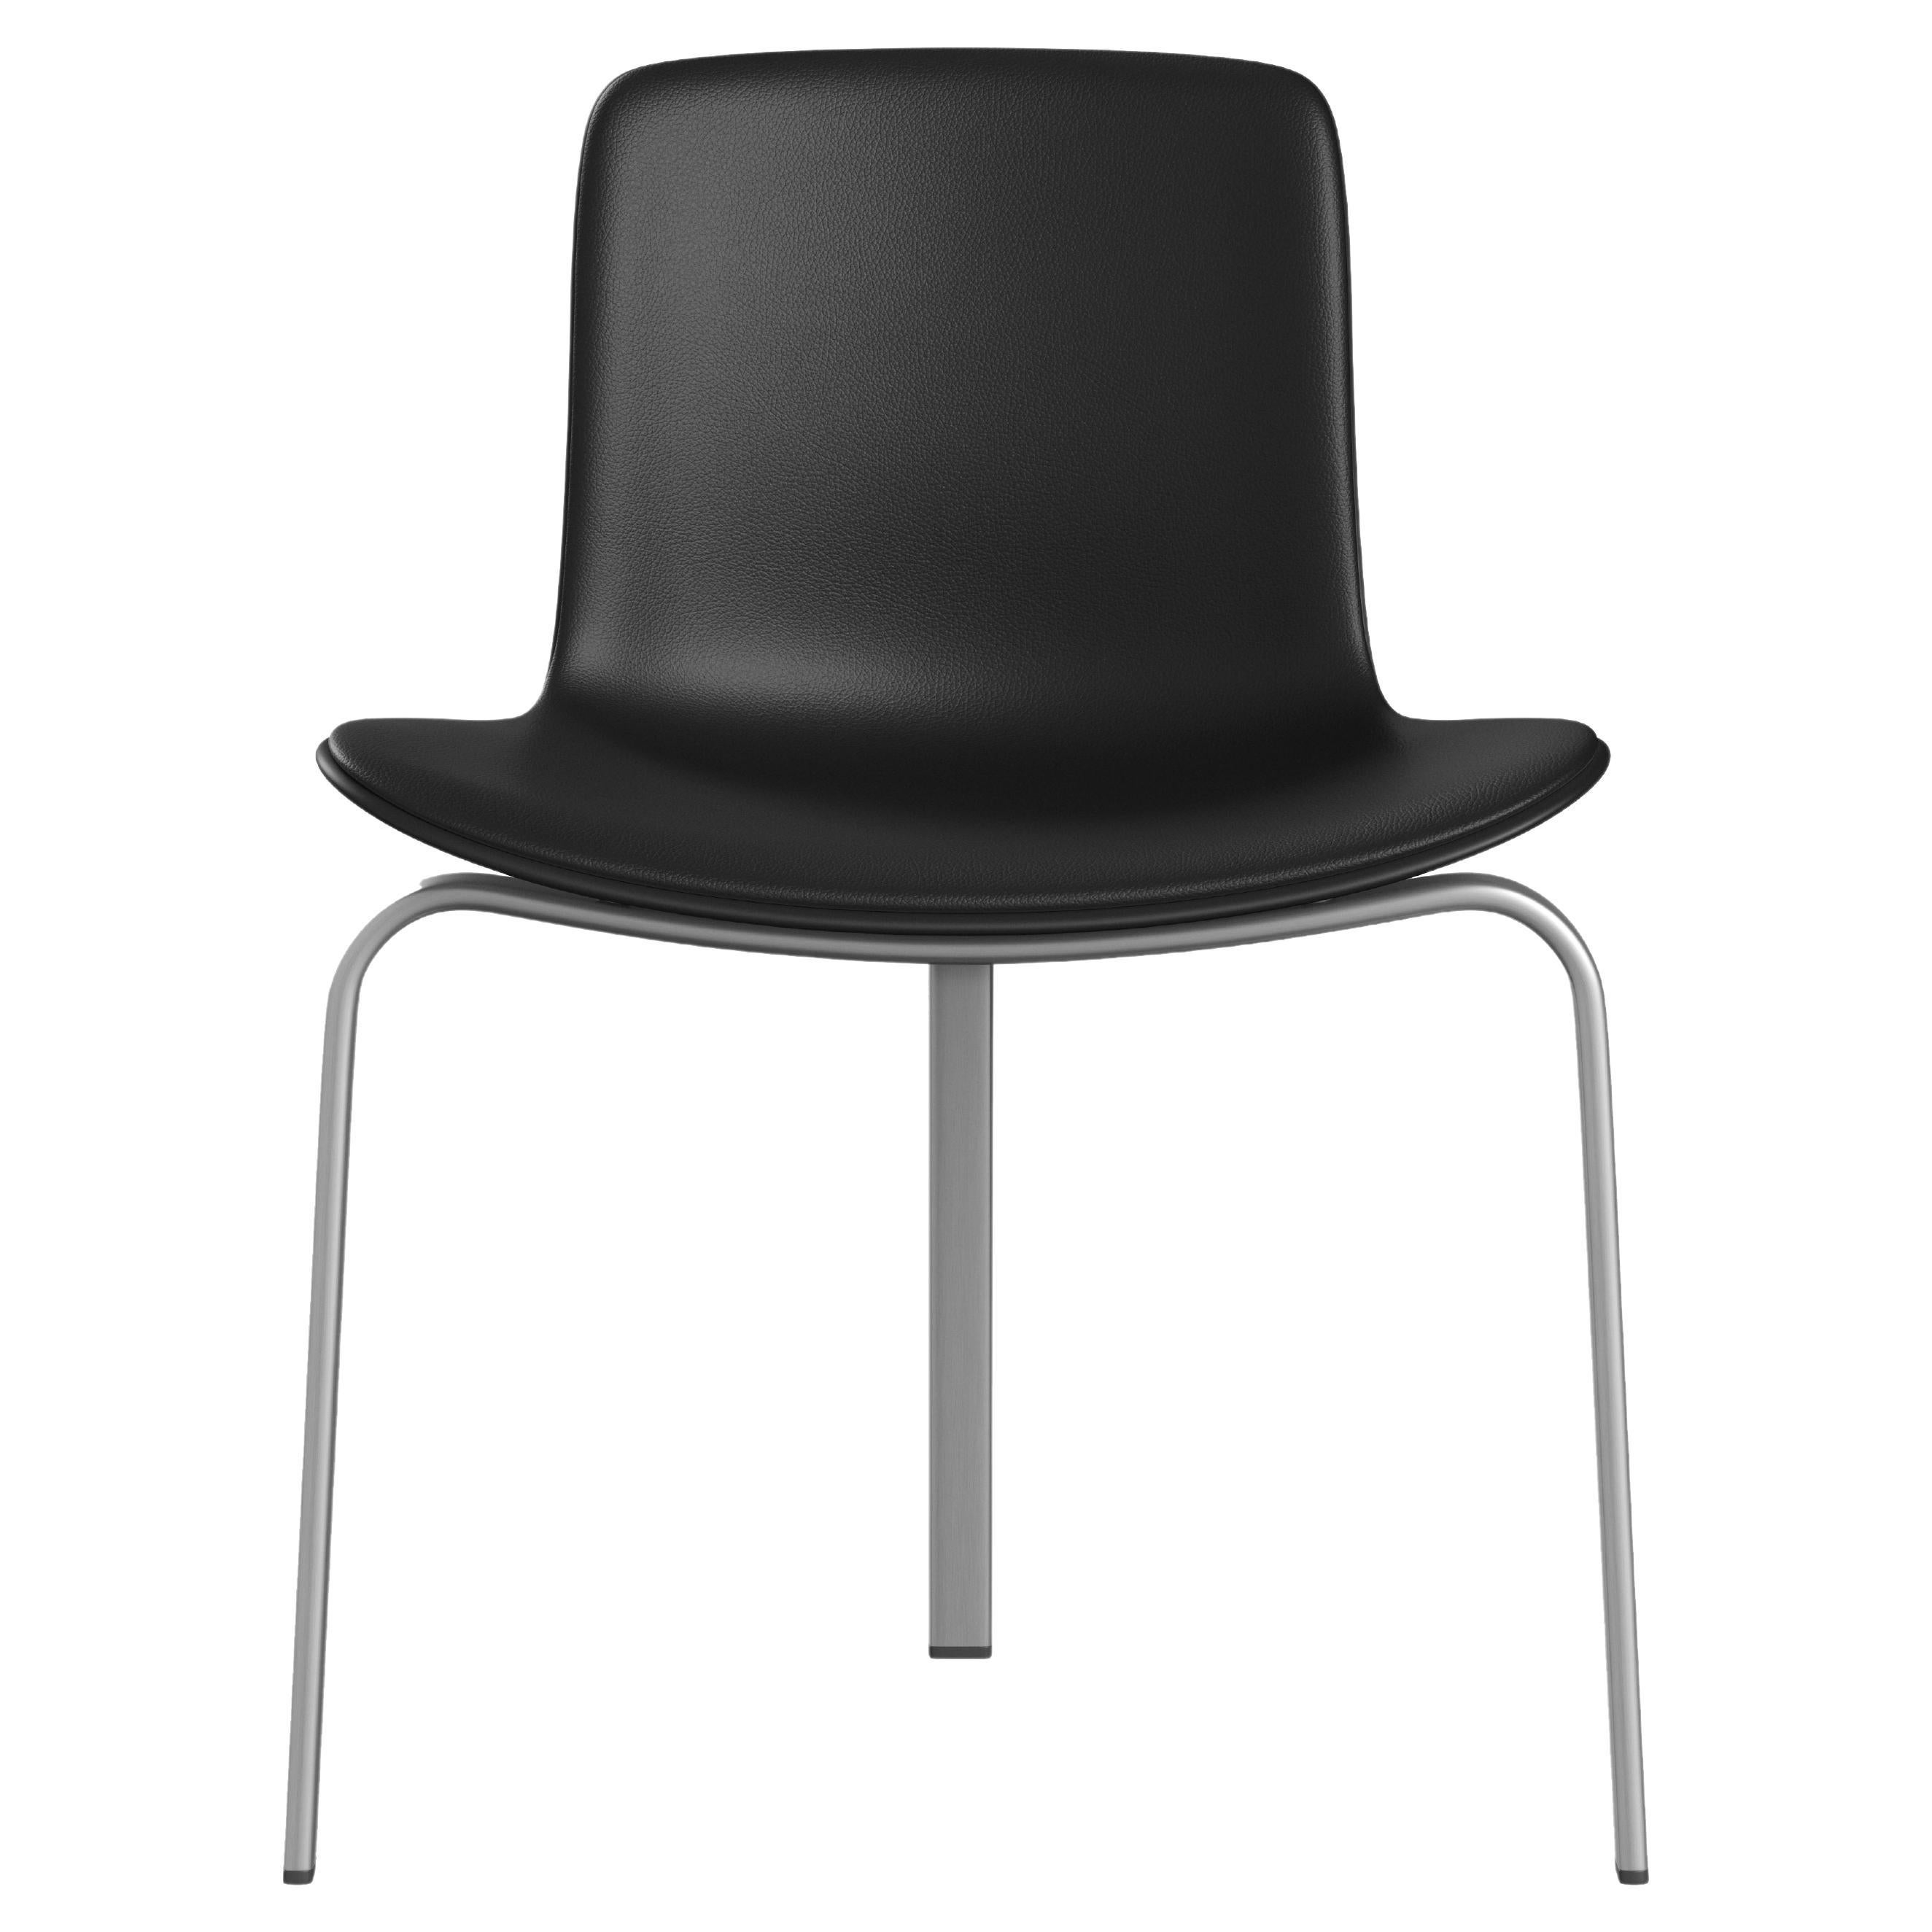 Poul Kjærholm 'PK8' Dining Chair for Fritz Hansen in Aura Leather Upholstery